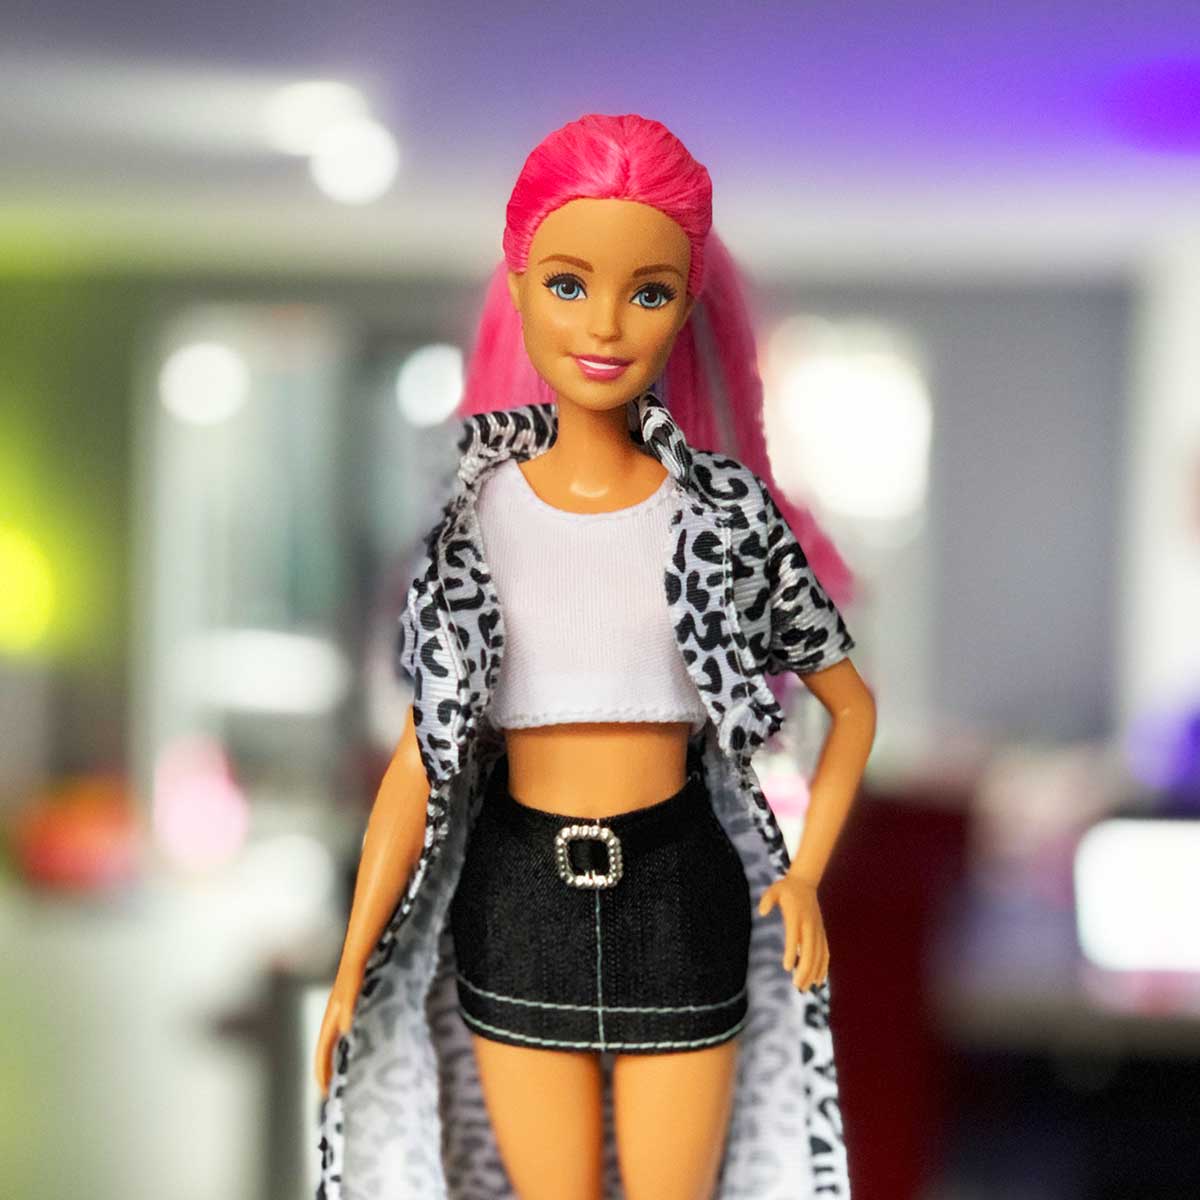 Barbie outfit met wit zwart panterprint vest wit mouwloos shirt en zwarte rok